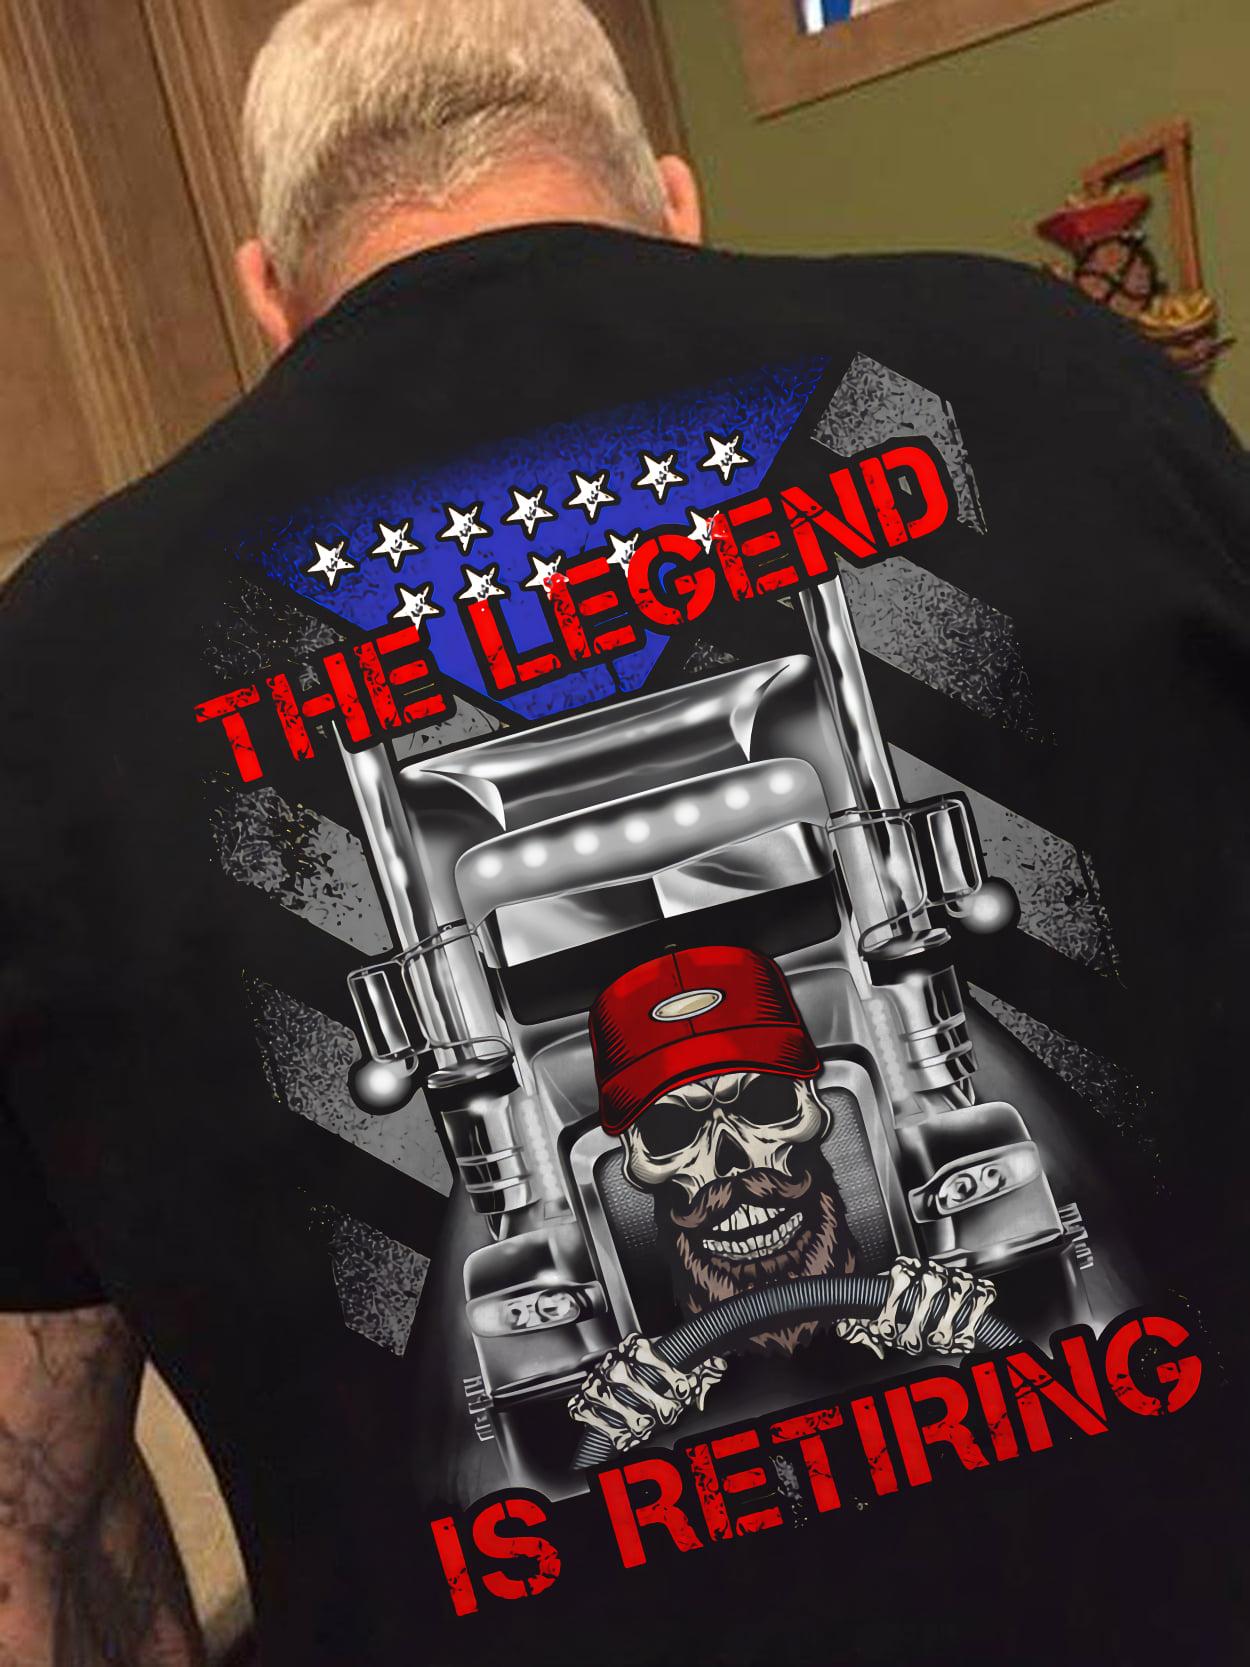 The legend is retiring - Retired trucker, skull riding truck